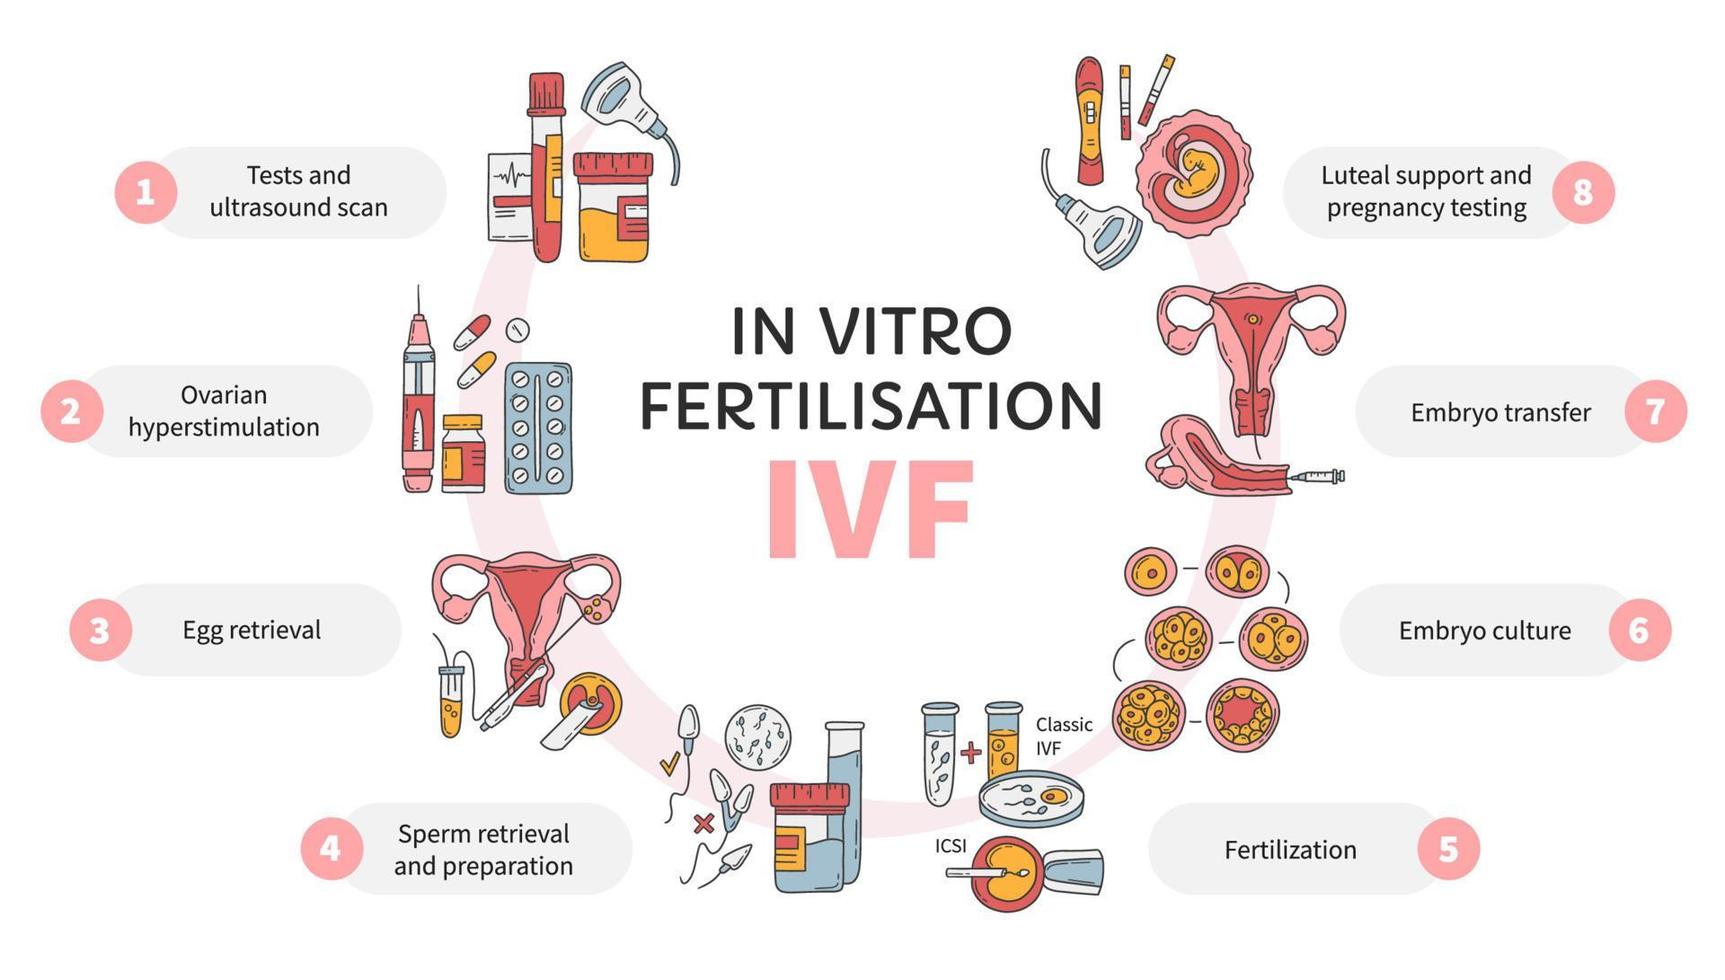 fertilización in vitro ivf círculo vectorial infográfico, esquema de tratamiento de infertilidad. hiperestimulación ovárica, inseminación artificial, cultivo de embriones, soporte lúteo. procedimiento medico para el embarazo vector